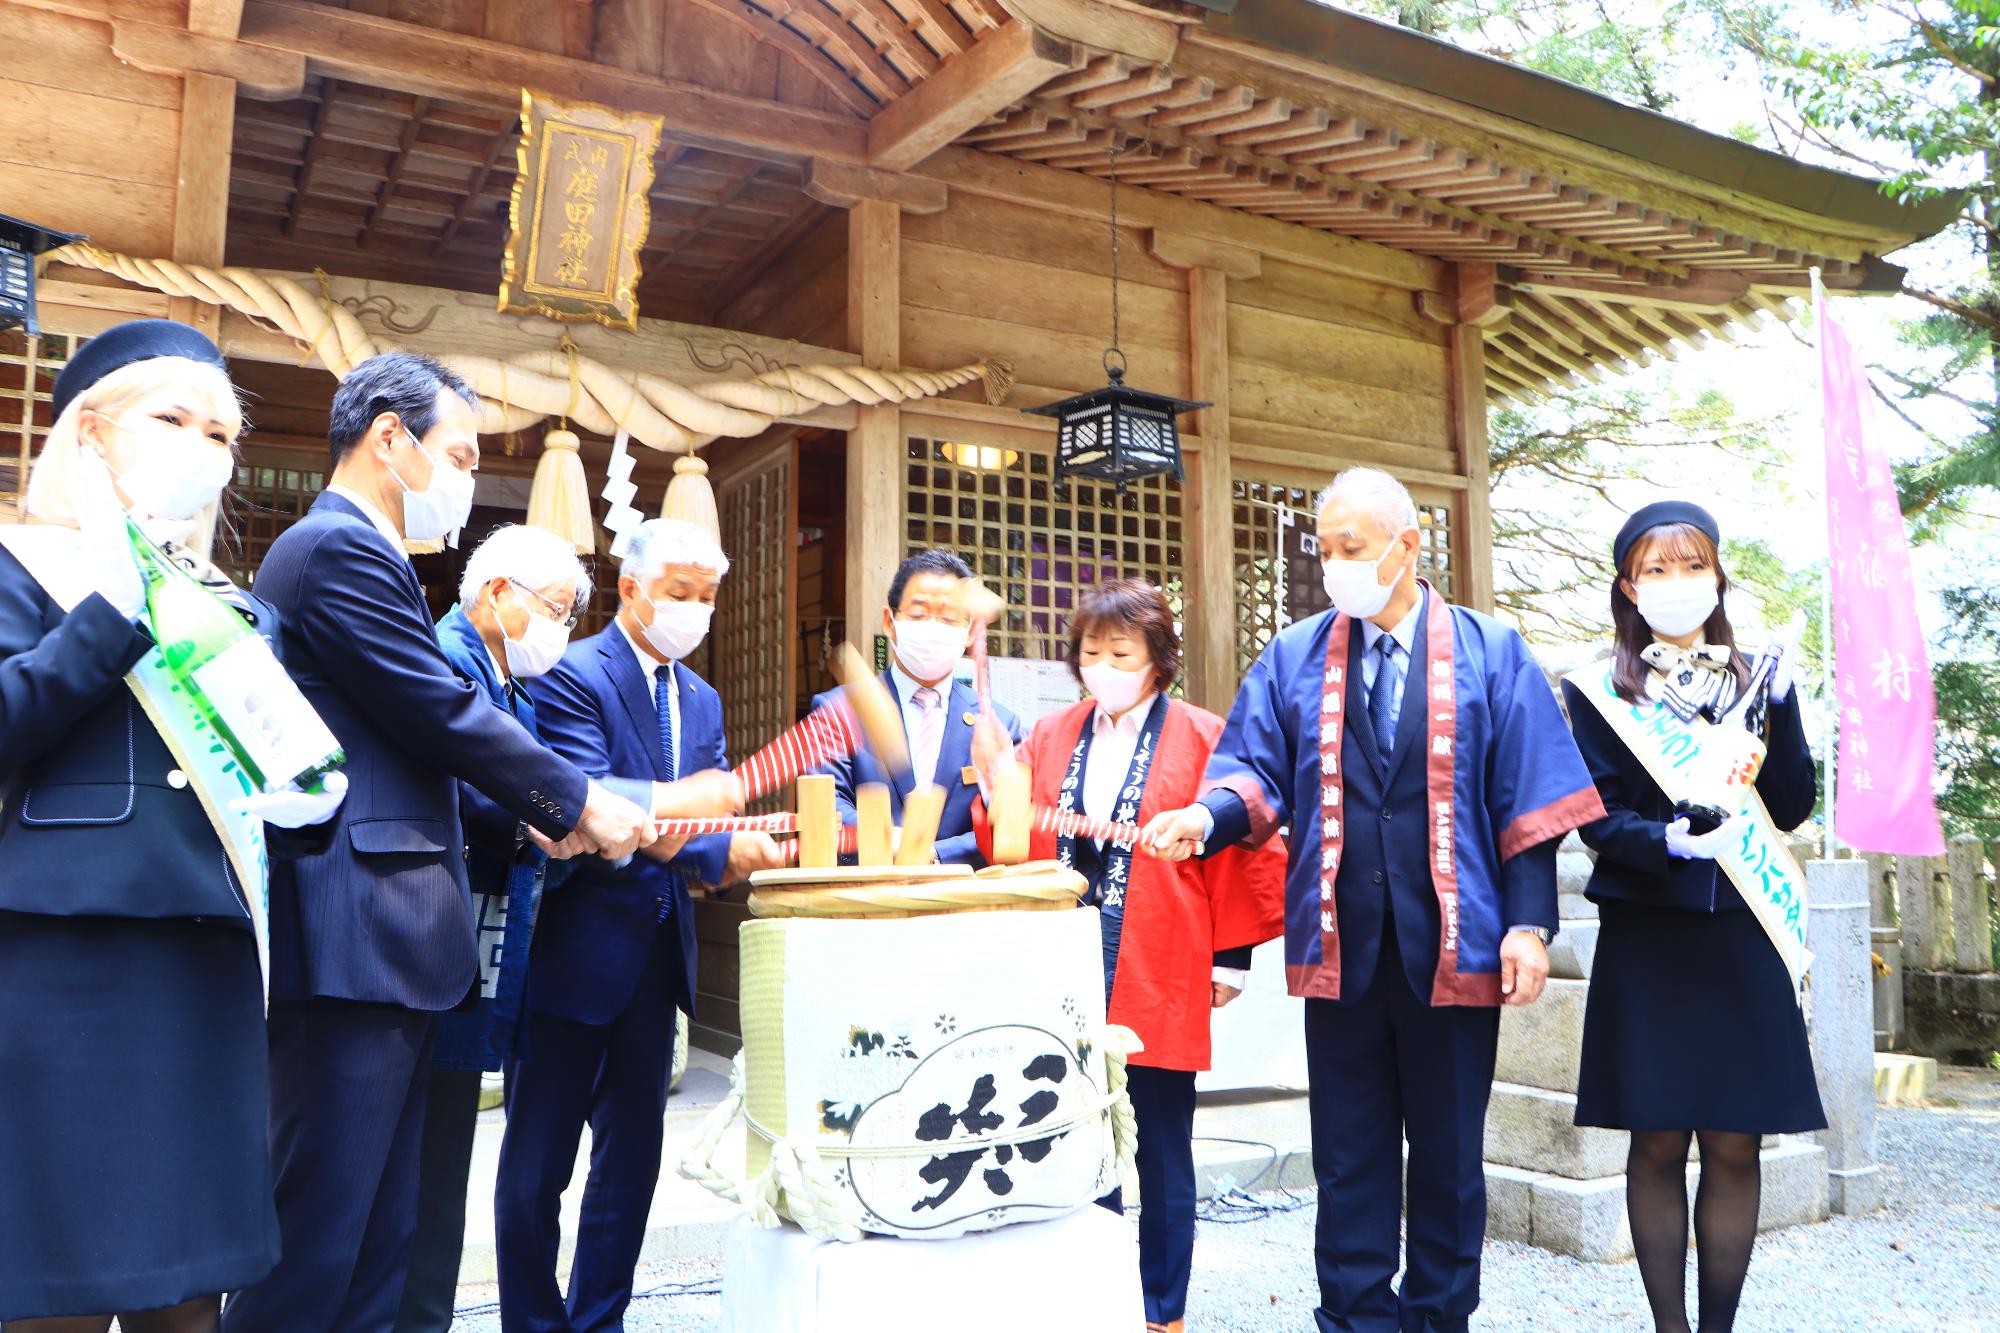 一宮町の庭田神社で開かれた地酒「三笑」の蔵出式で鏡開きをする関係者らの写真